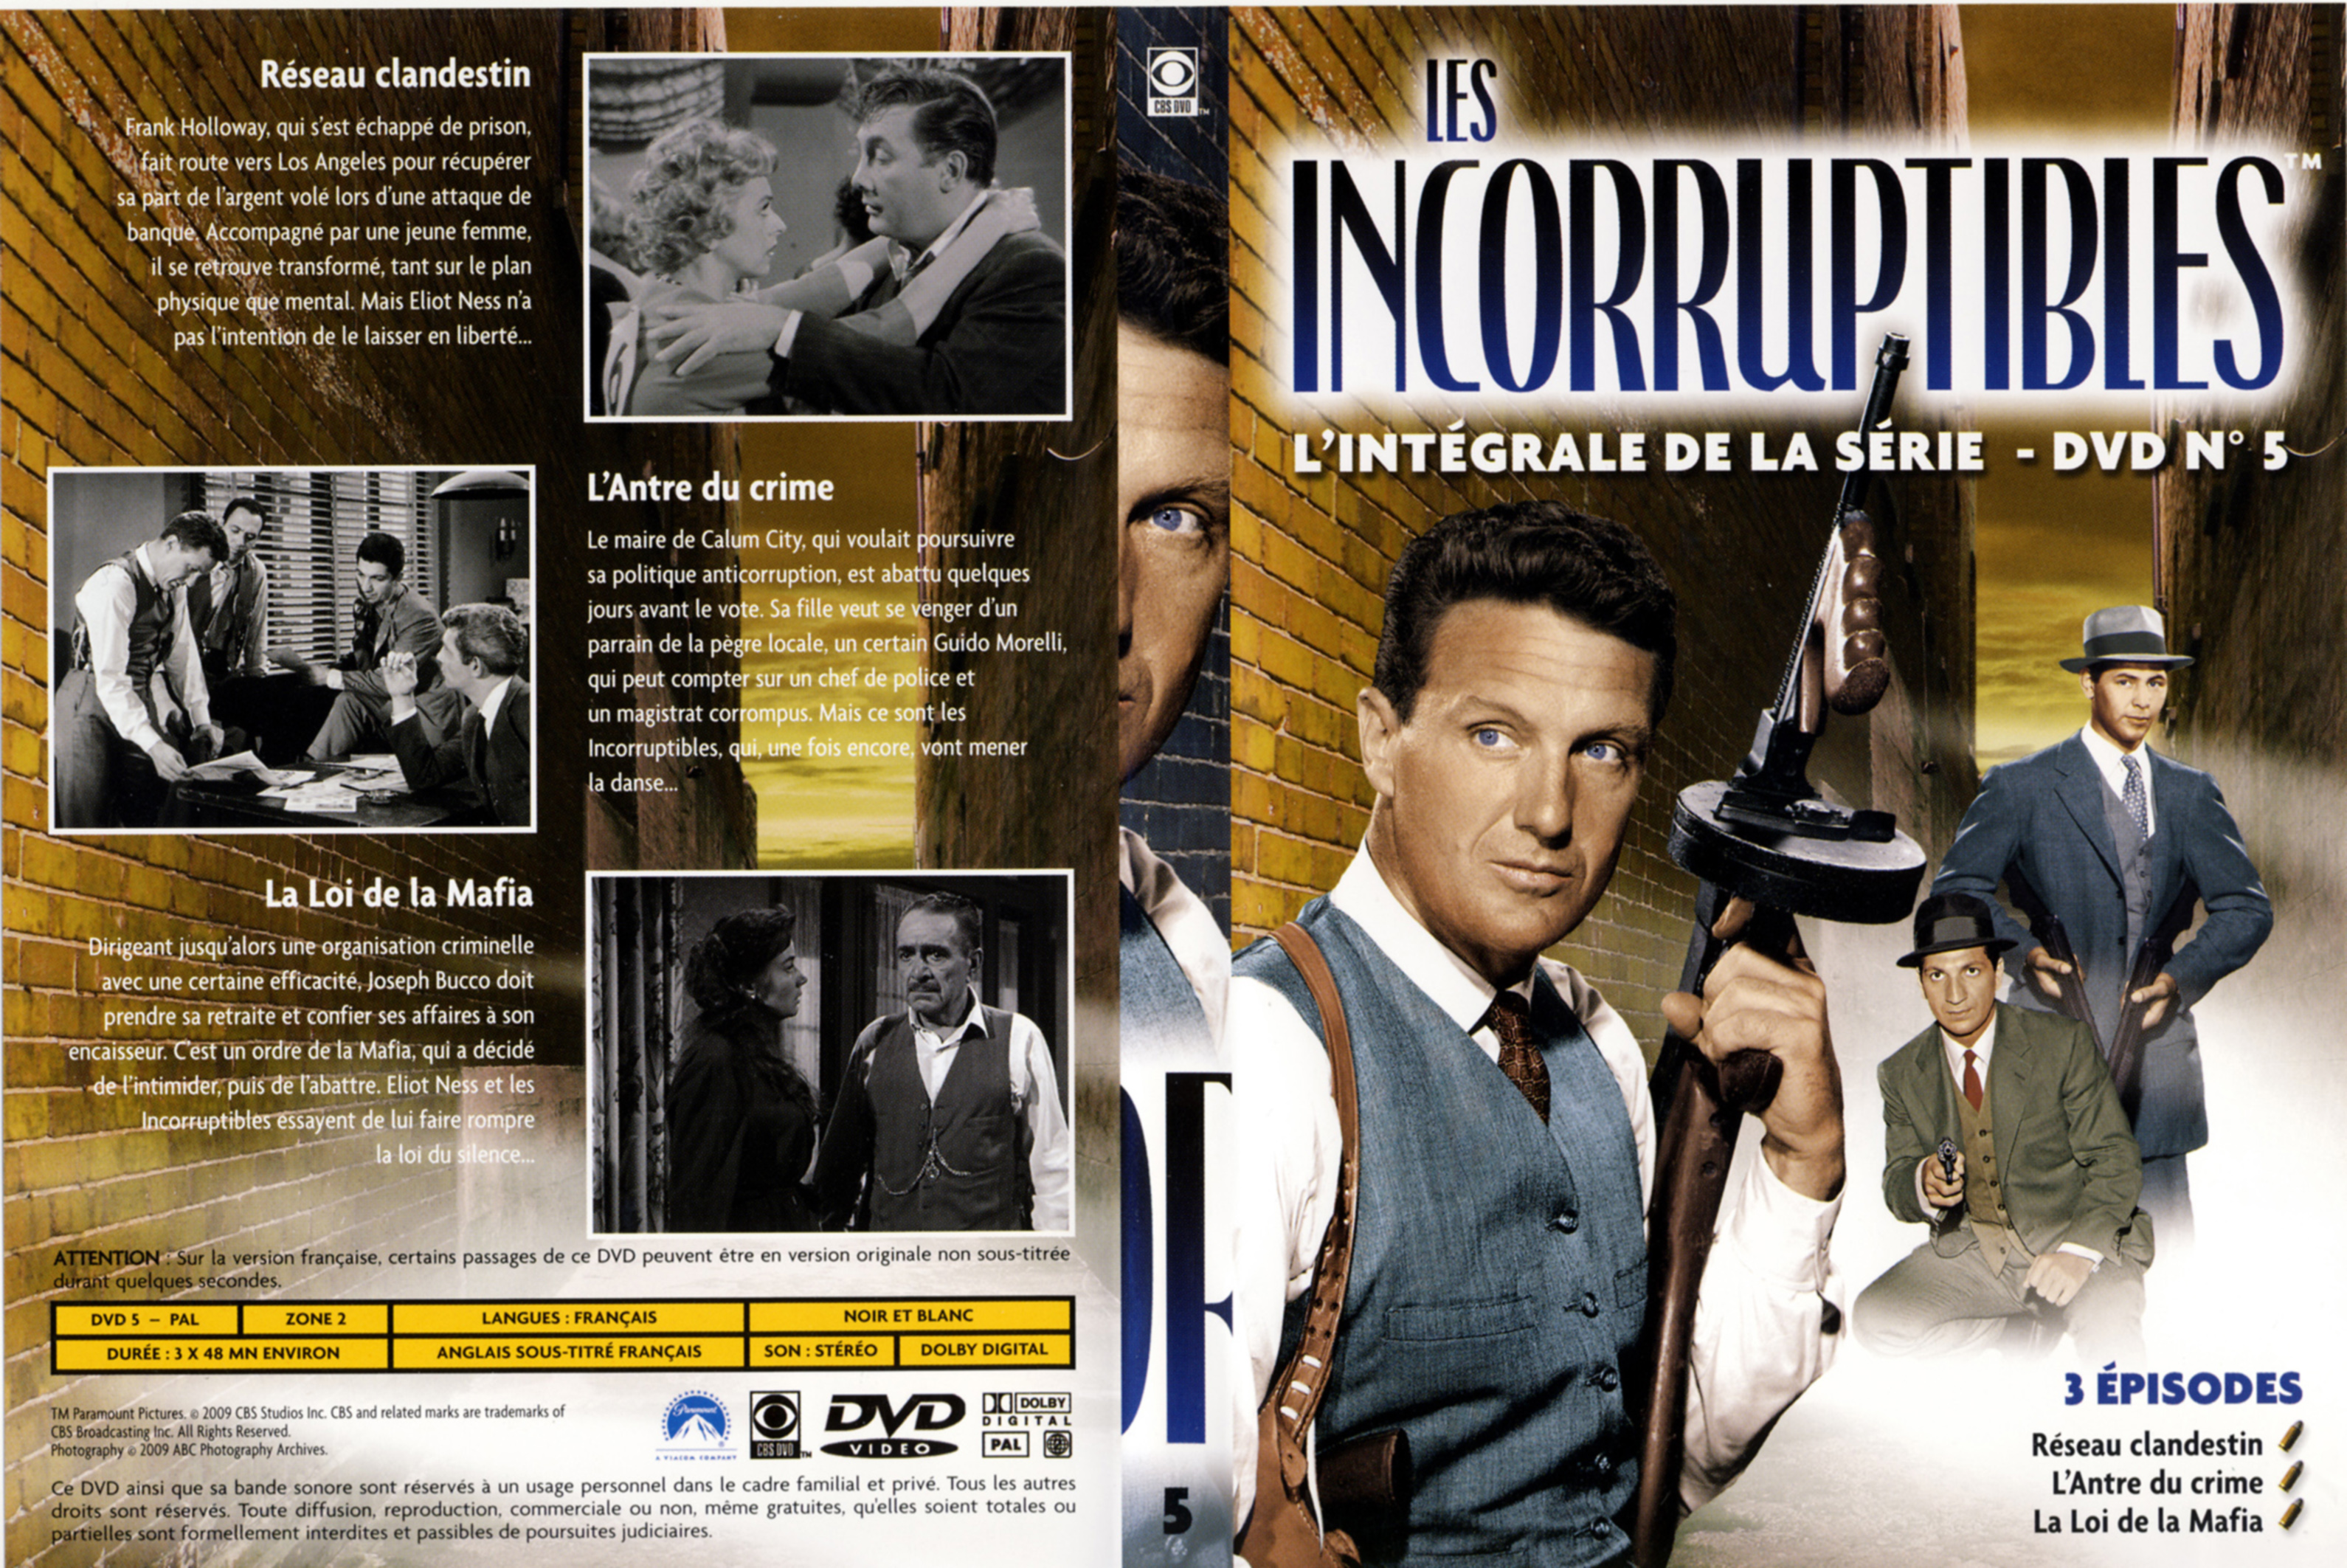 Jaquette DVD Les incorruptibles intgrale DVD 05